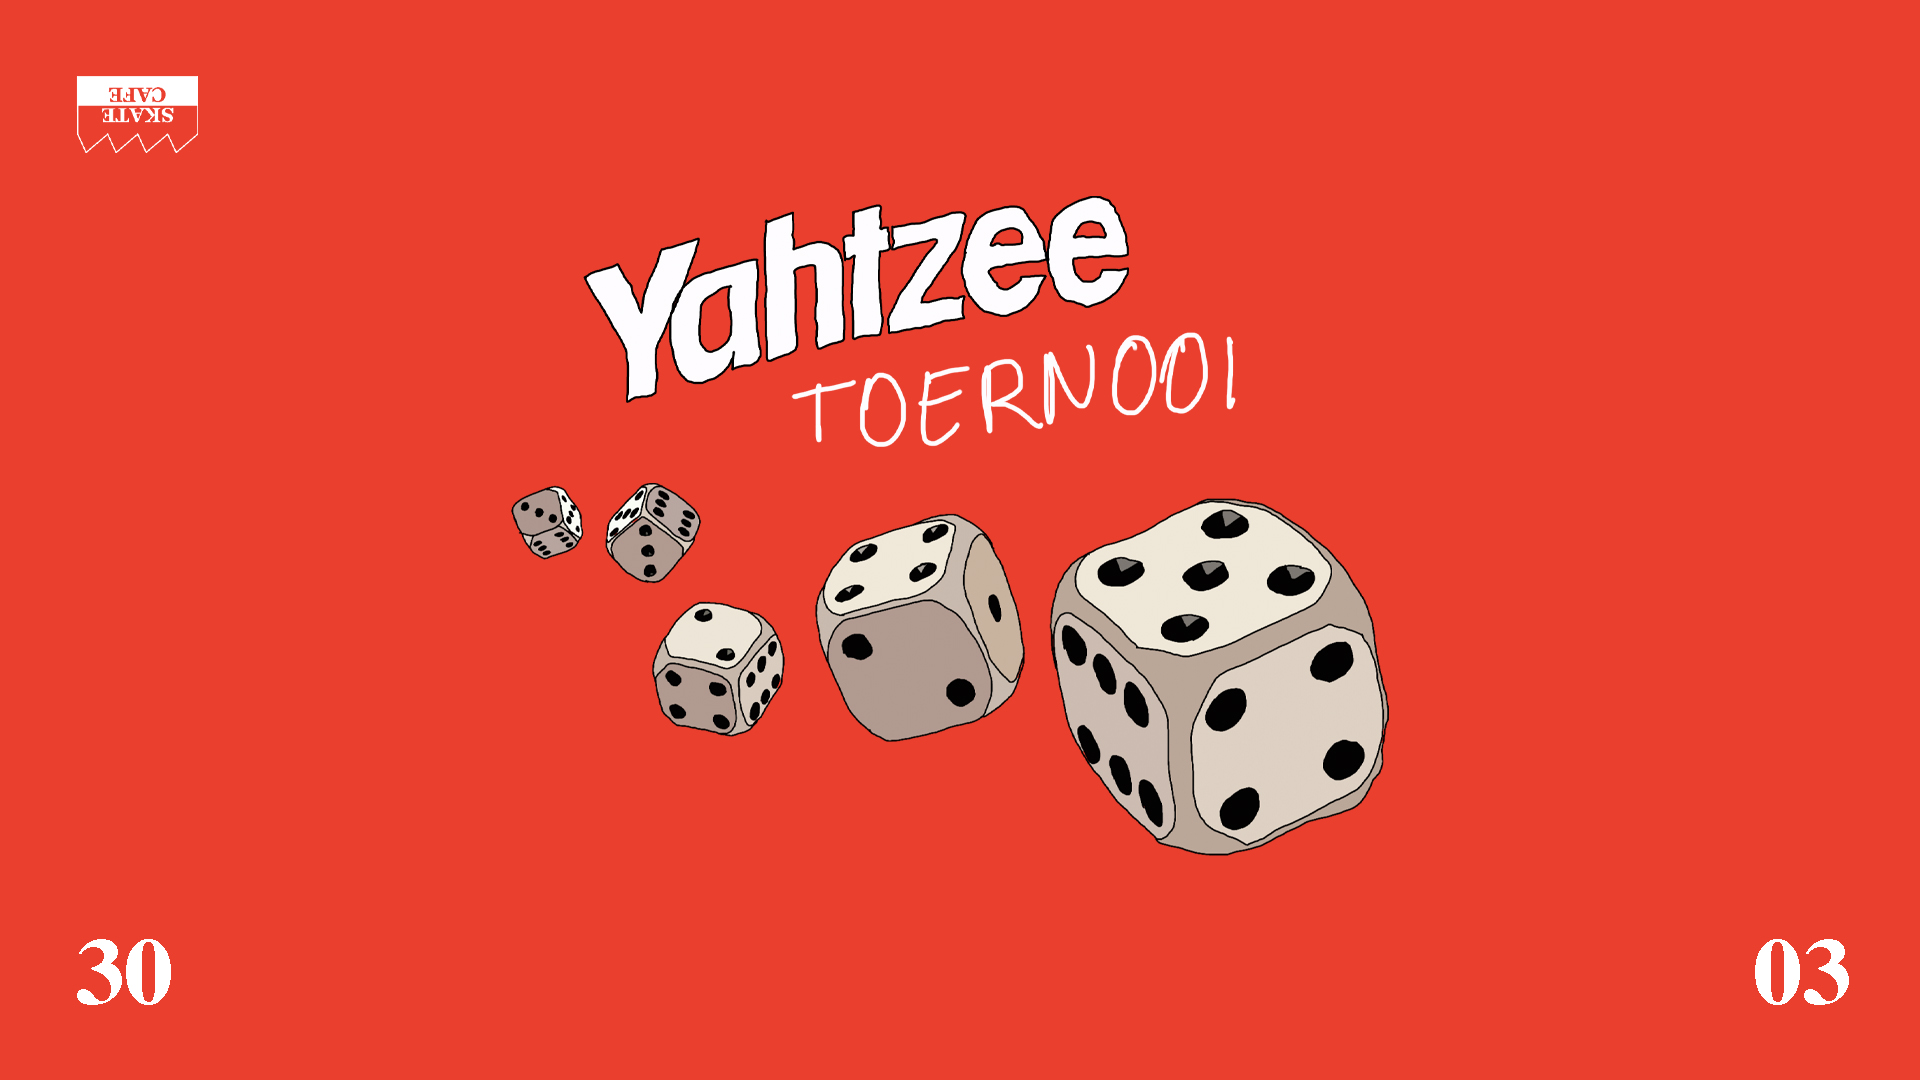 YAHTZEE TOERNOOI header